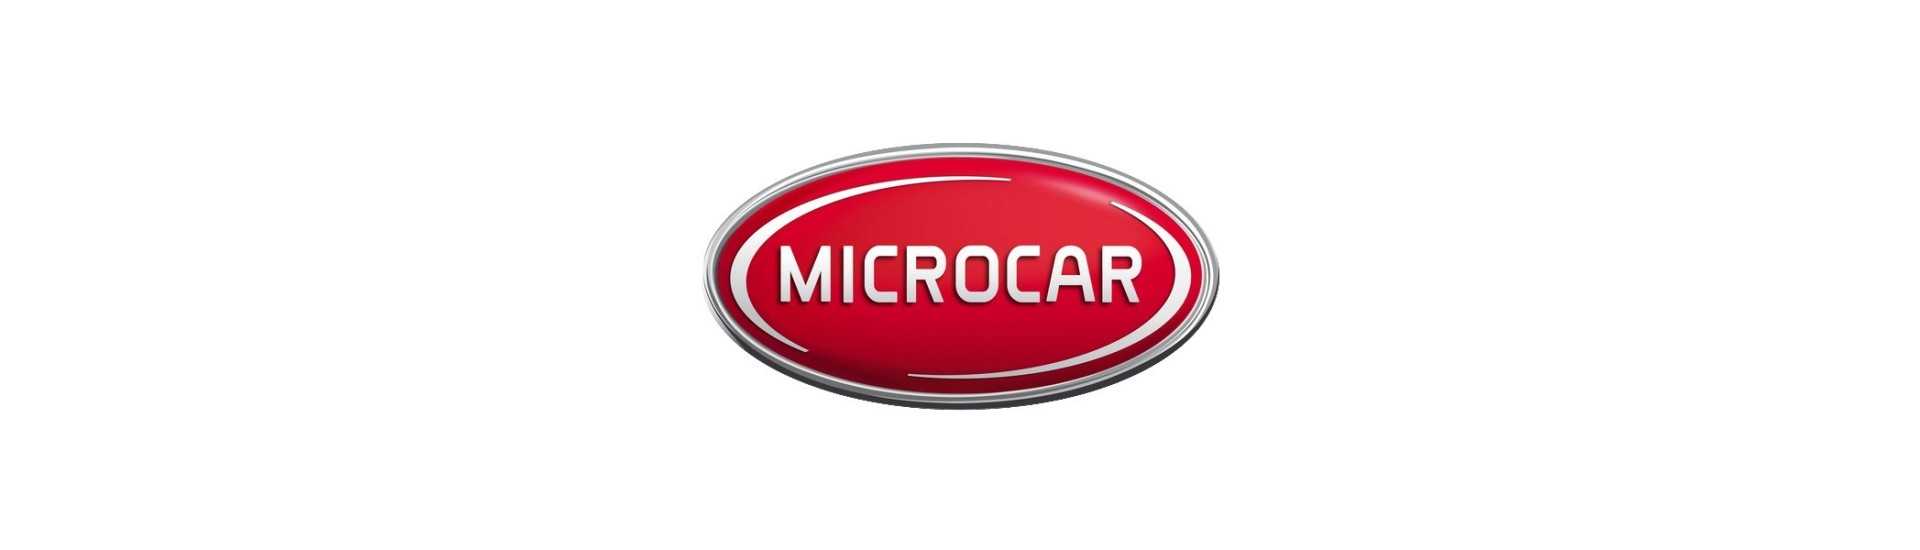 Brems Tambour zum besten Preis für Auto ohne Lizenz Microcar